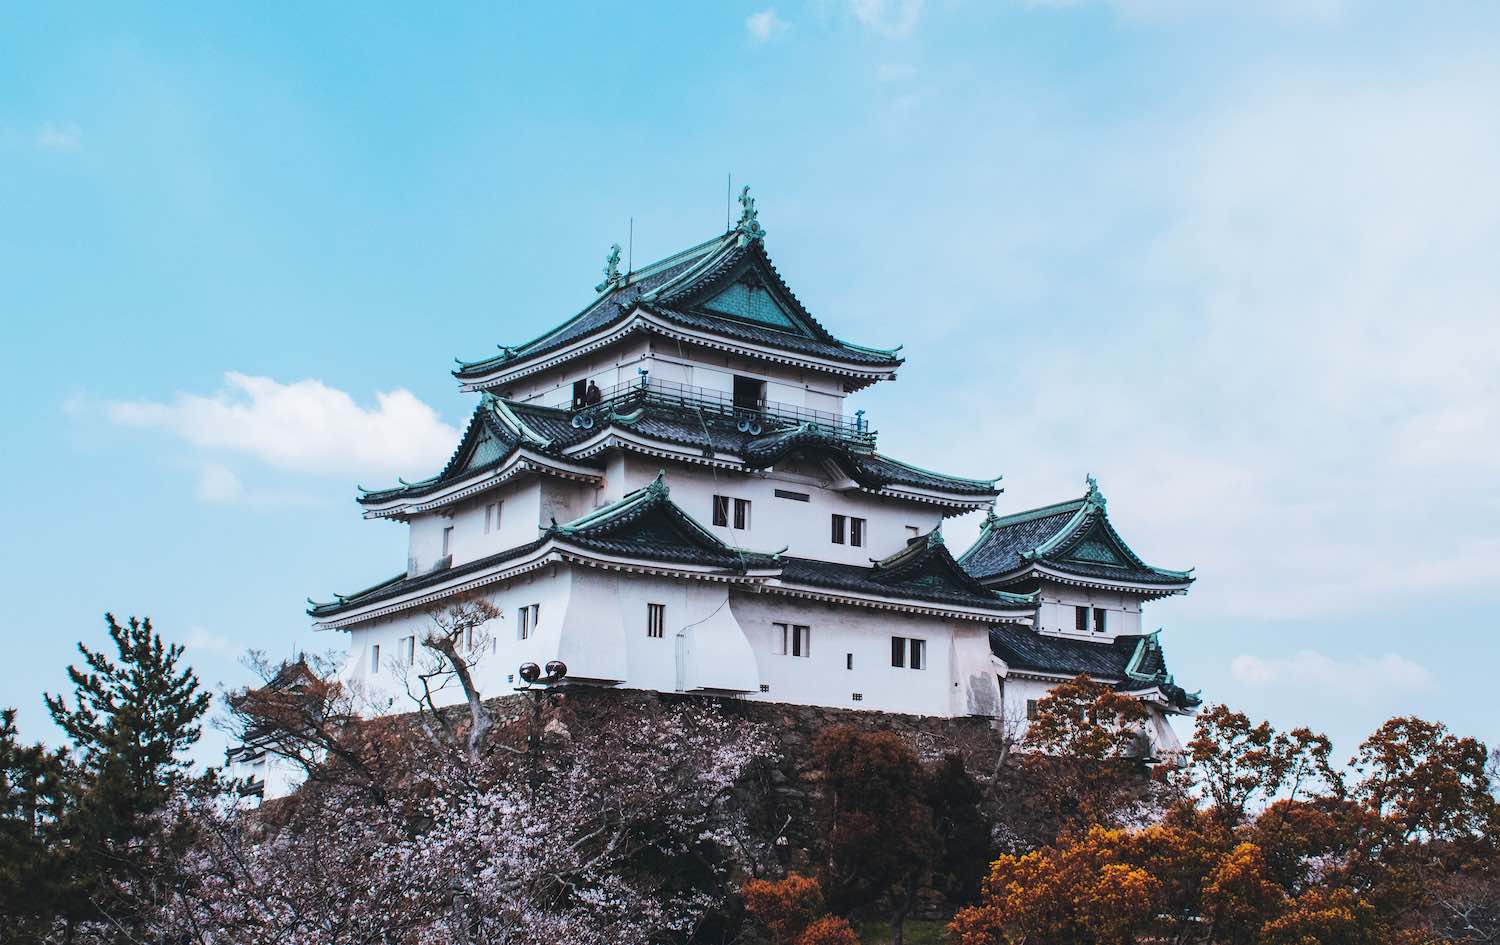 Partons à la découverte du Château de Wakayama